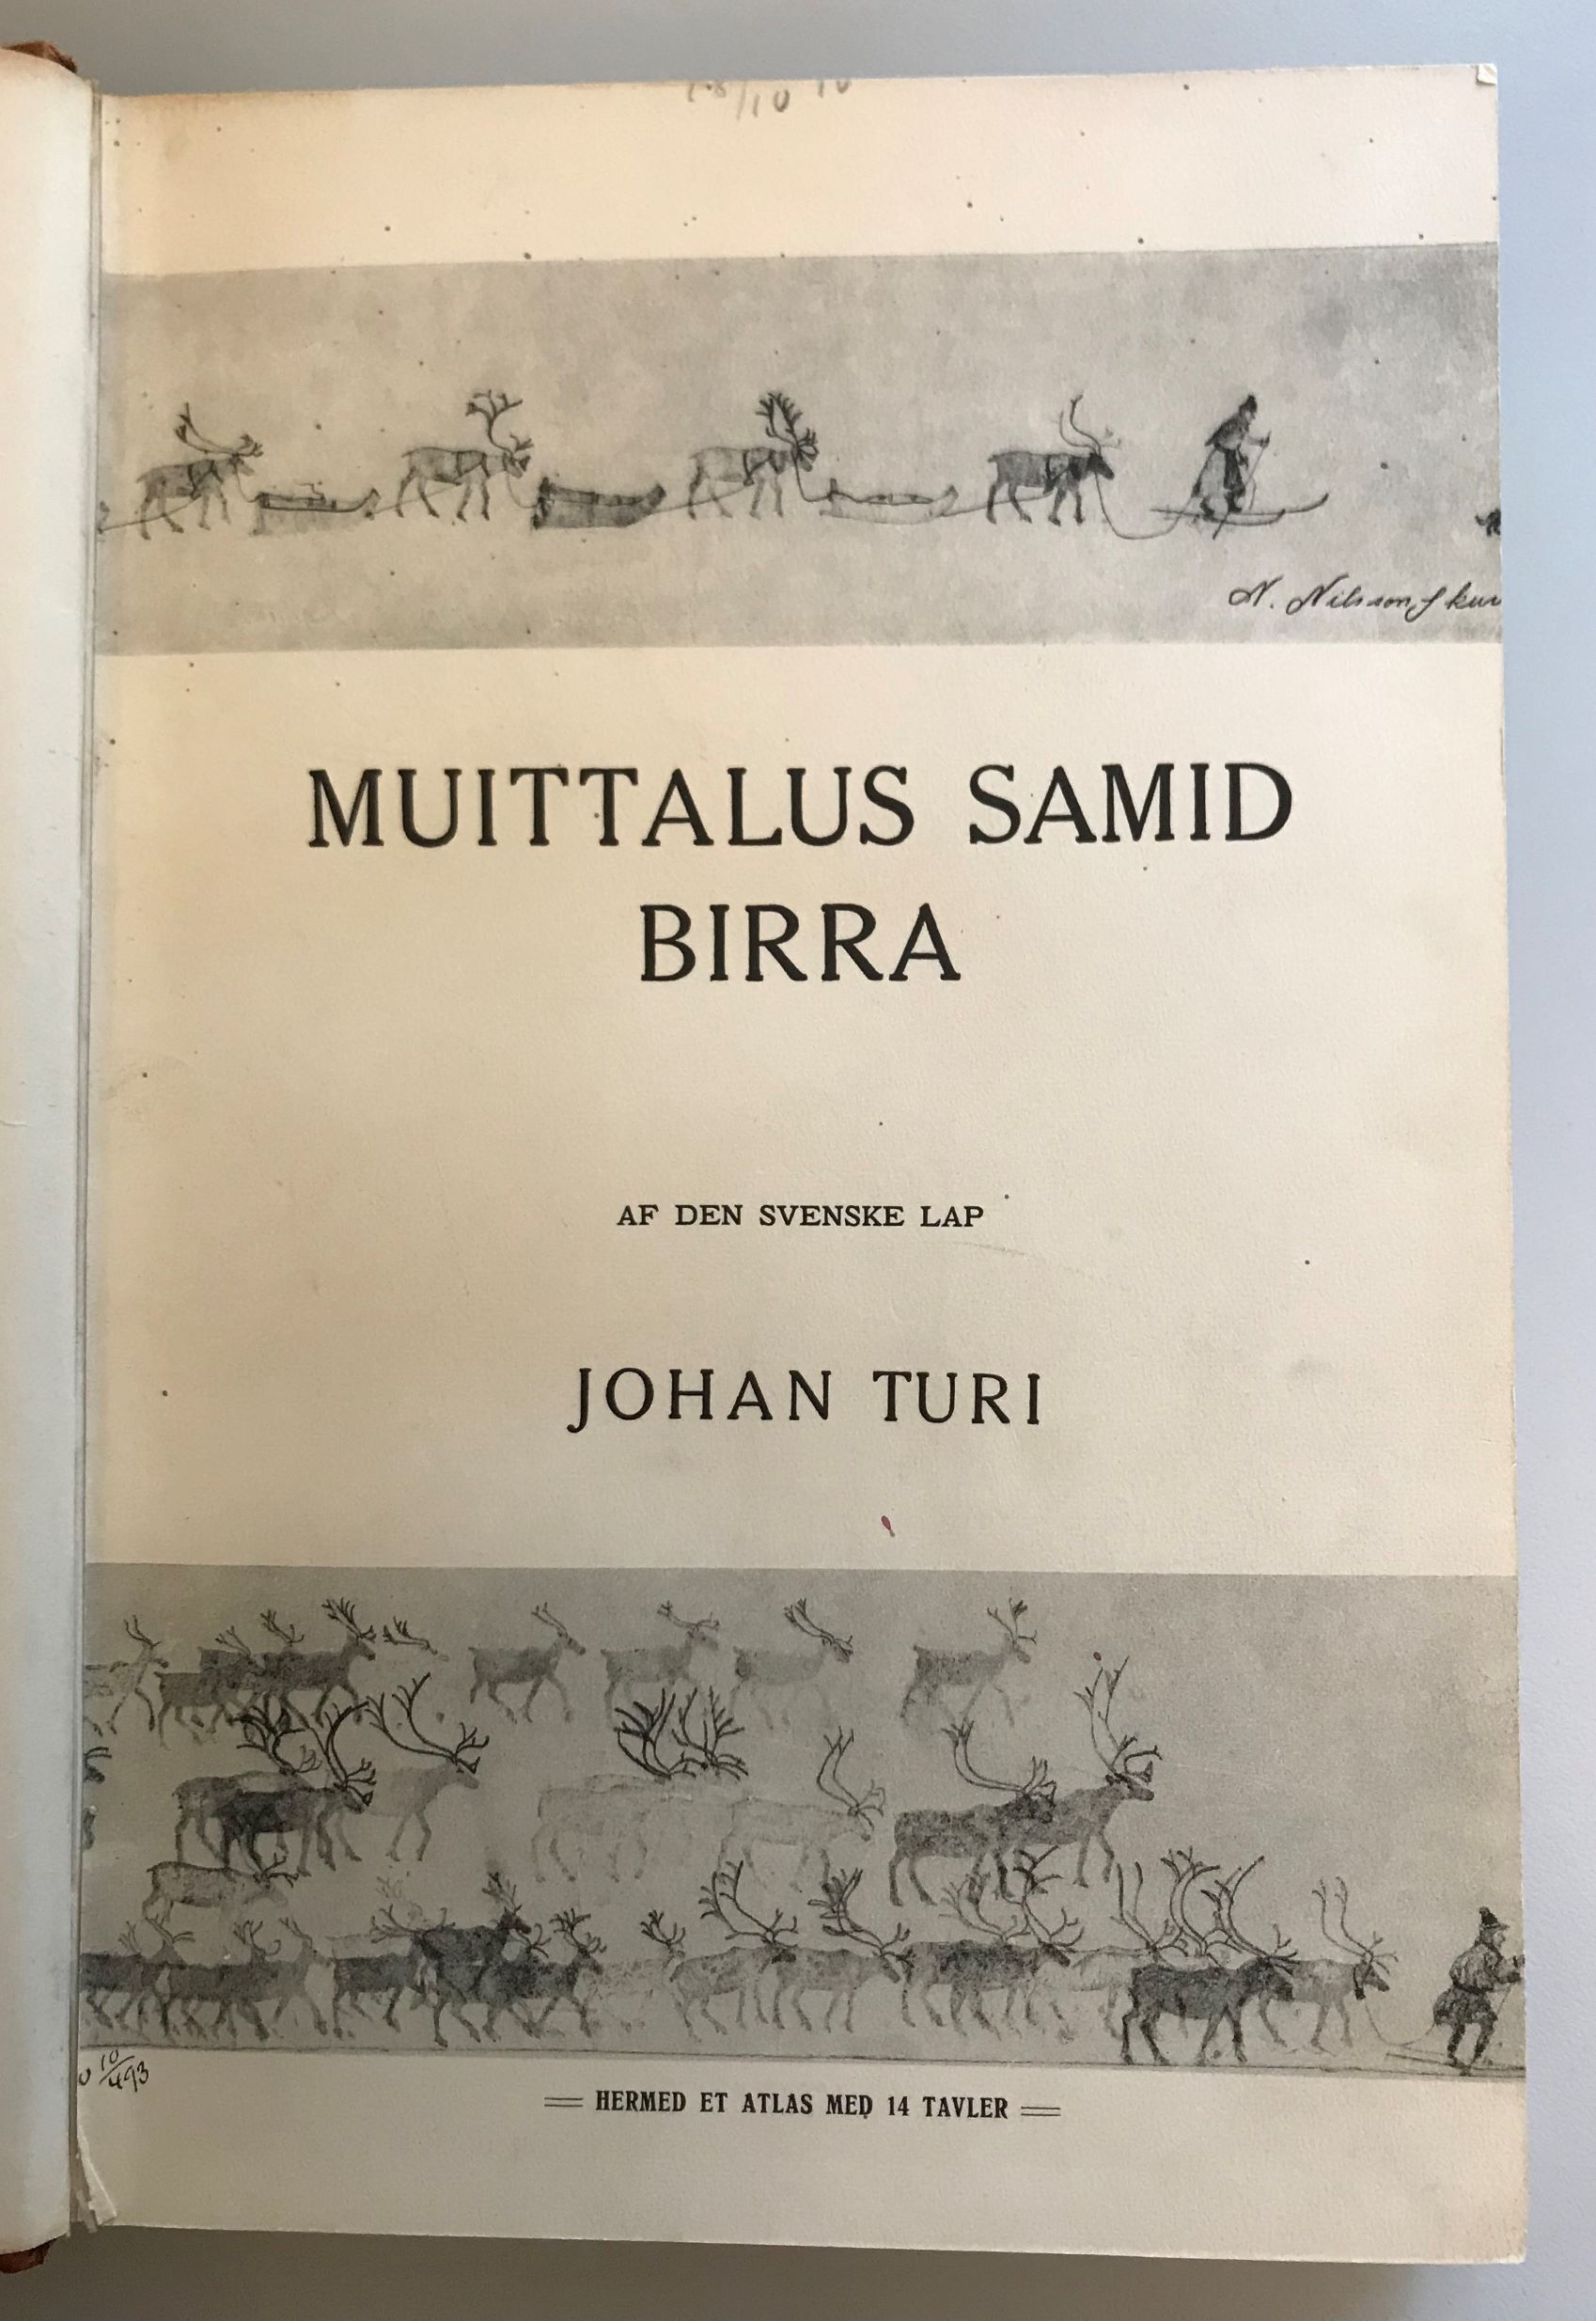 Svartvitt bokomslag med titel på samiska och undertexter på danska, omgärdat av tecknade bilder av renar och samer på skidor.